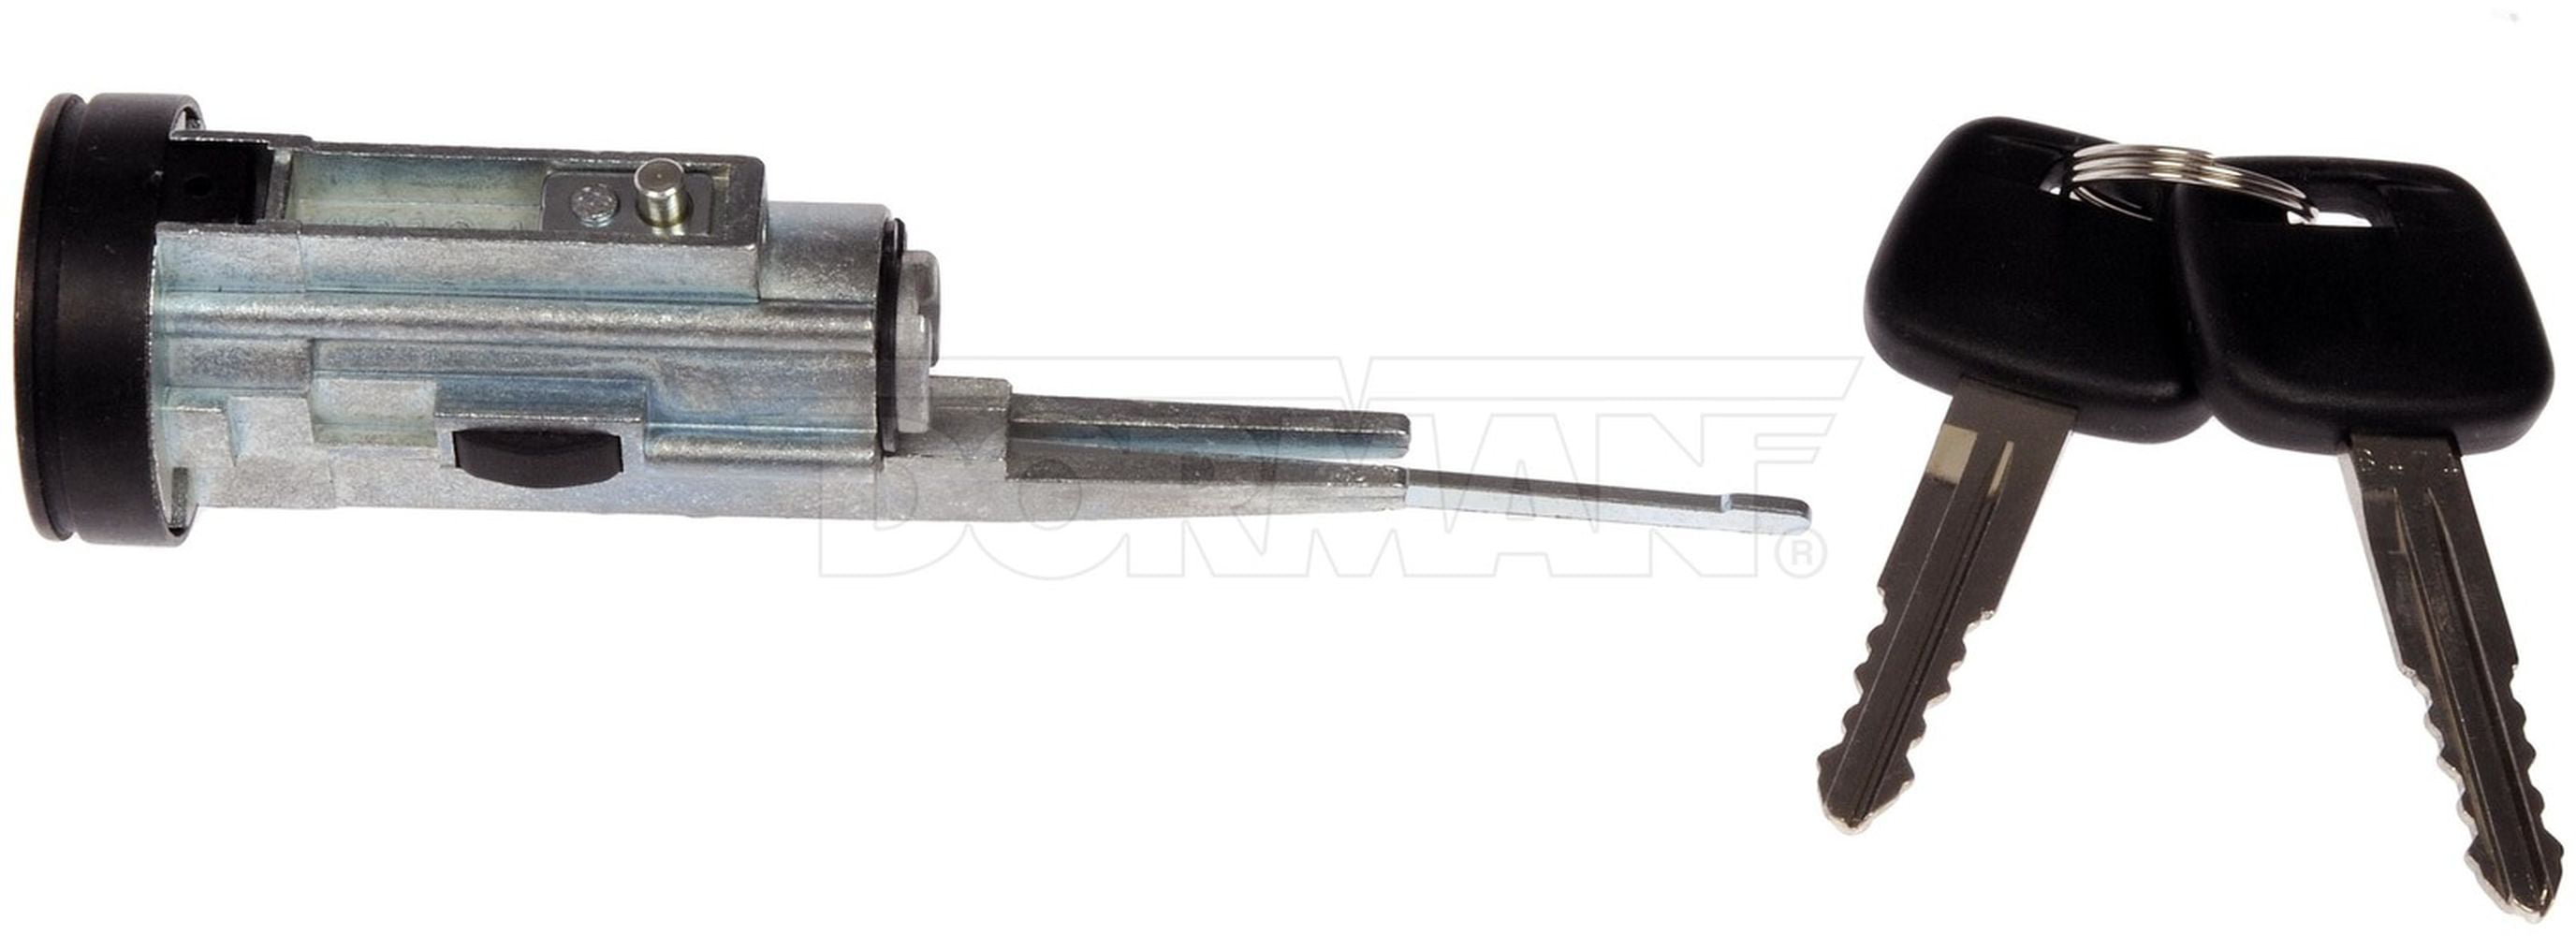 Dorman 926-063 Ignition Lock Cylinder for Select Chevrolet/GMC Models 